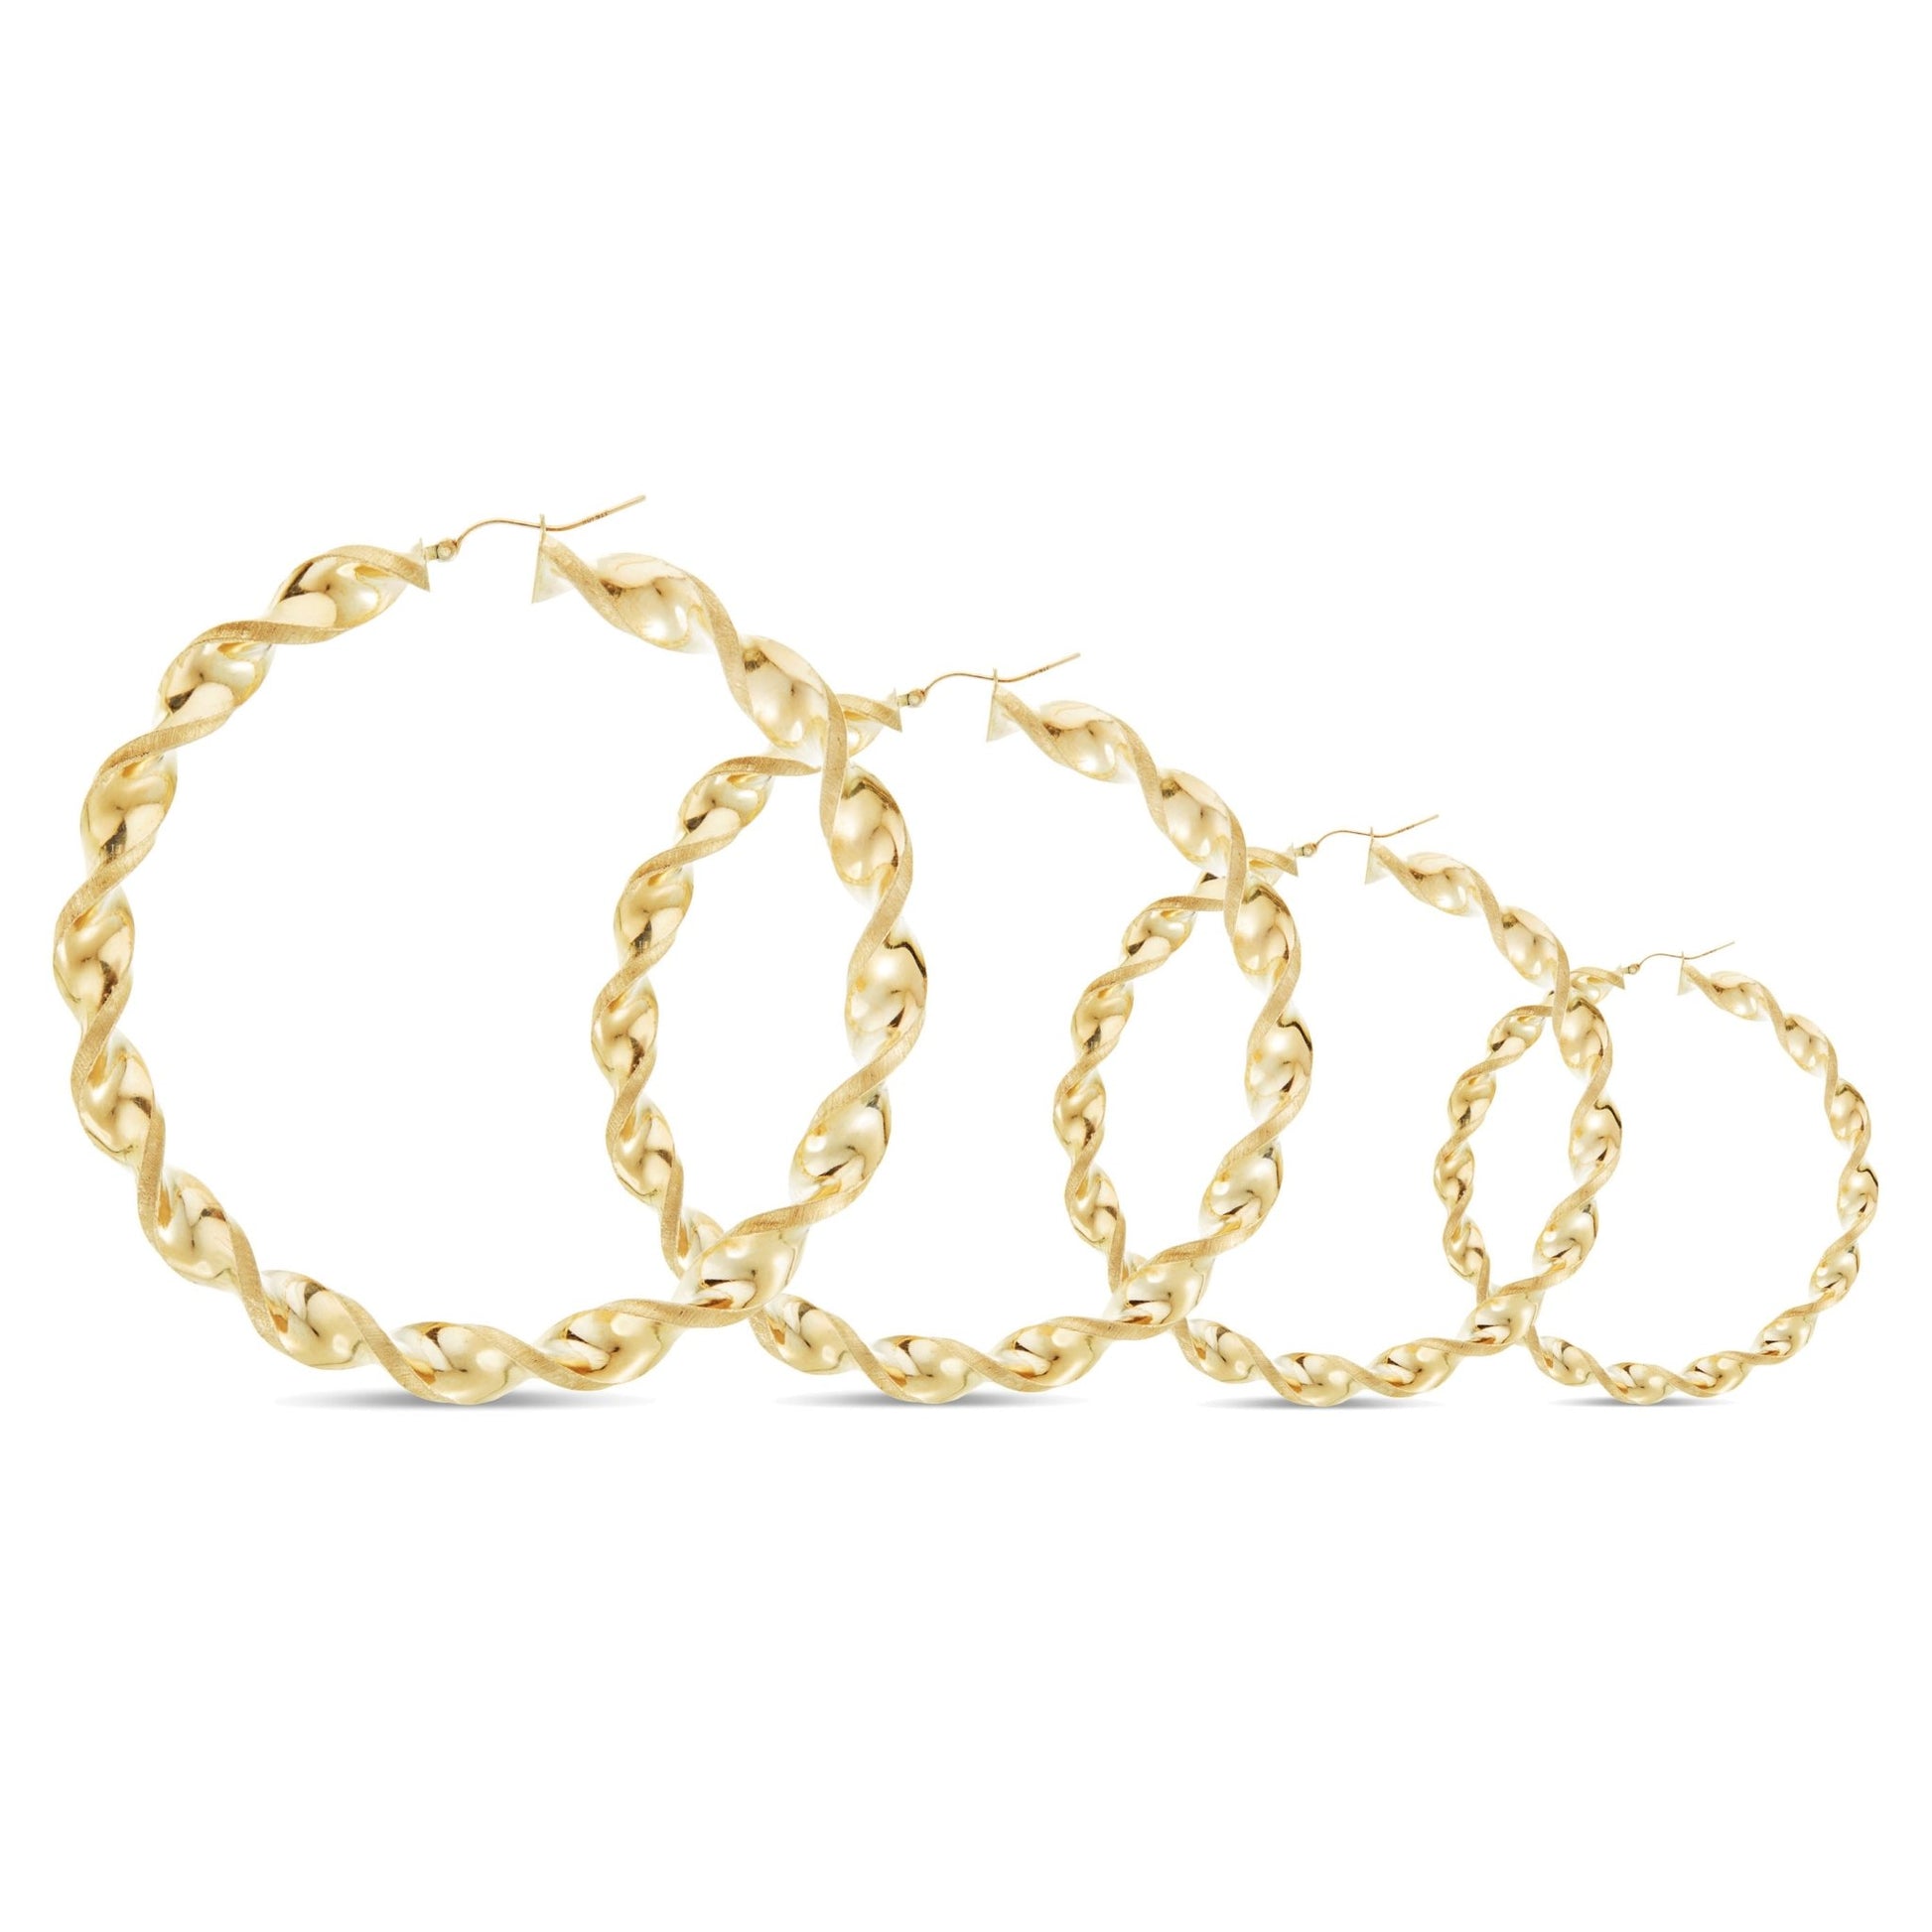 Gold Twist Hoops - Shyne Jewelers 2.5 Inches Shyne Jewelers